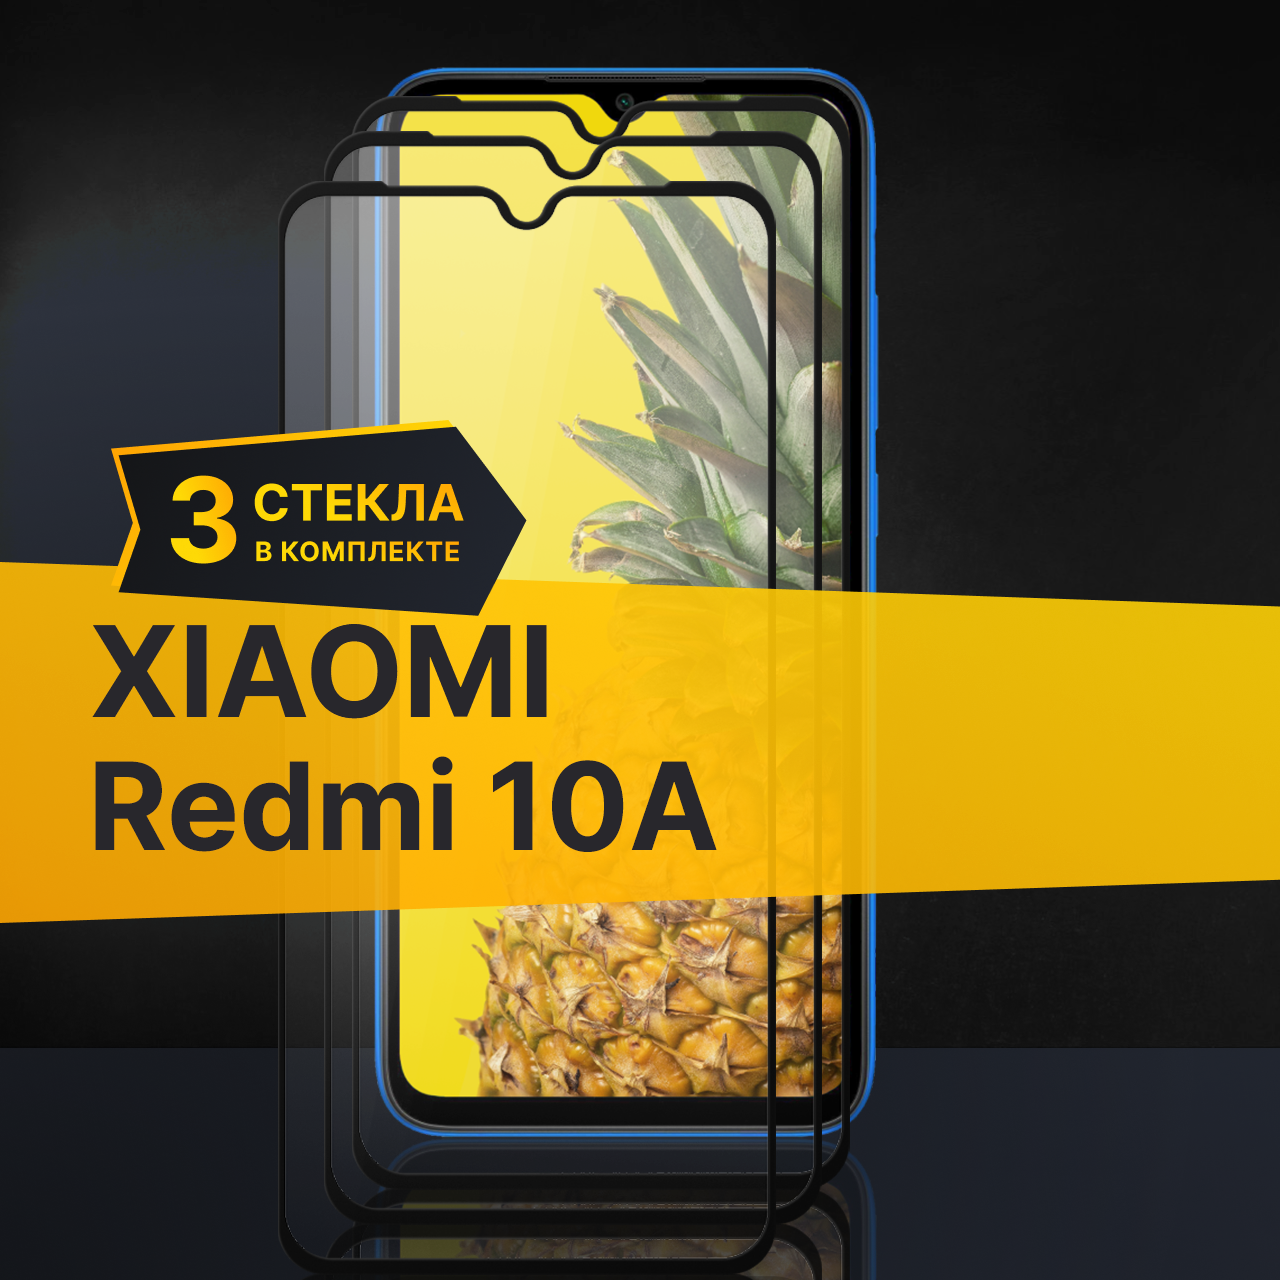 Комплект 2 шт. Противоударное защитное стекло для телефона Xiaomi Redmi 10A / Полноклеевое 3D стекло с олеофобным покрытием на Сяоми Редми 10А